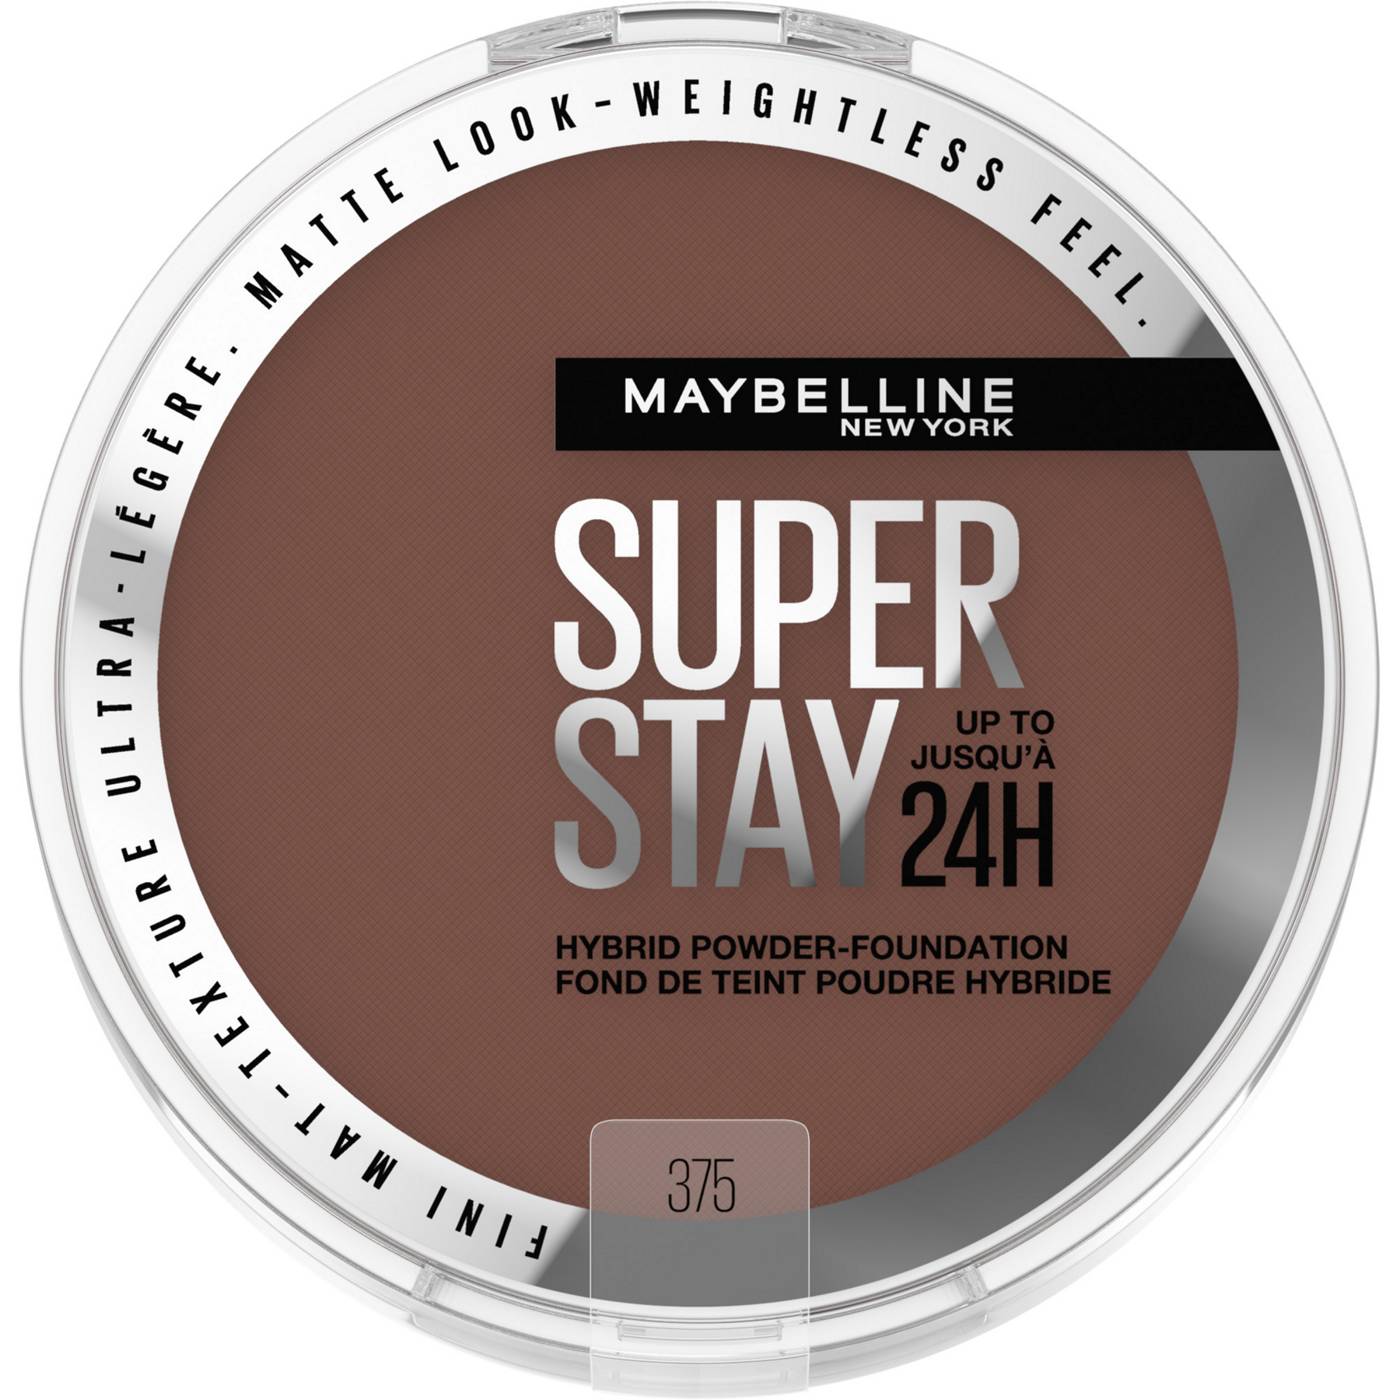 Maybelline Super Stay 24HR Hybrid Powder Foundation - 375 - Shop Foundation  at H-E-B